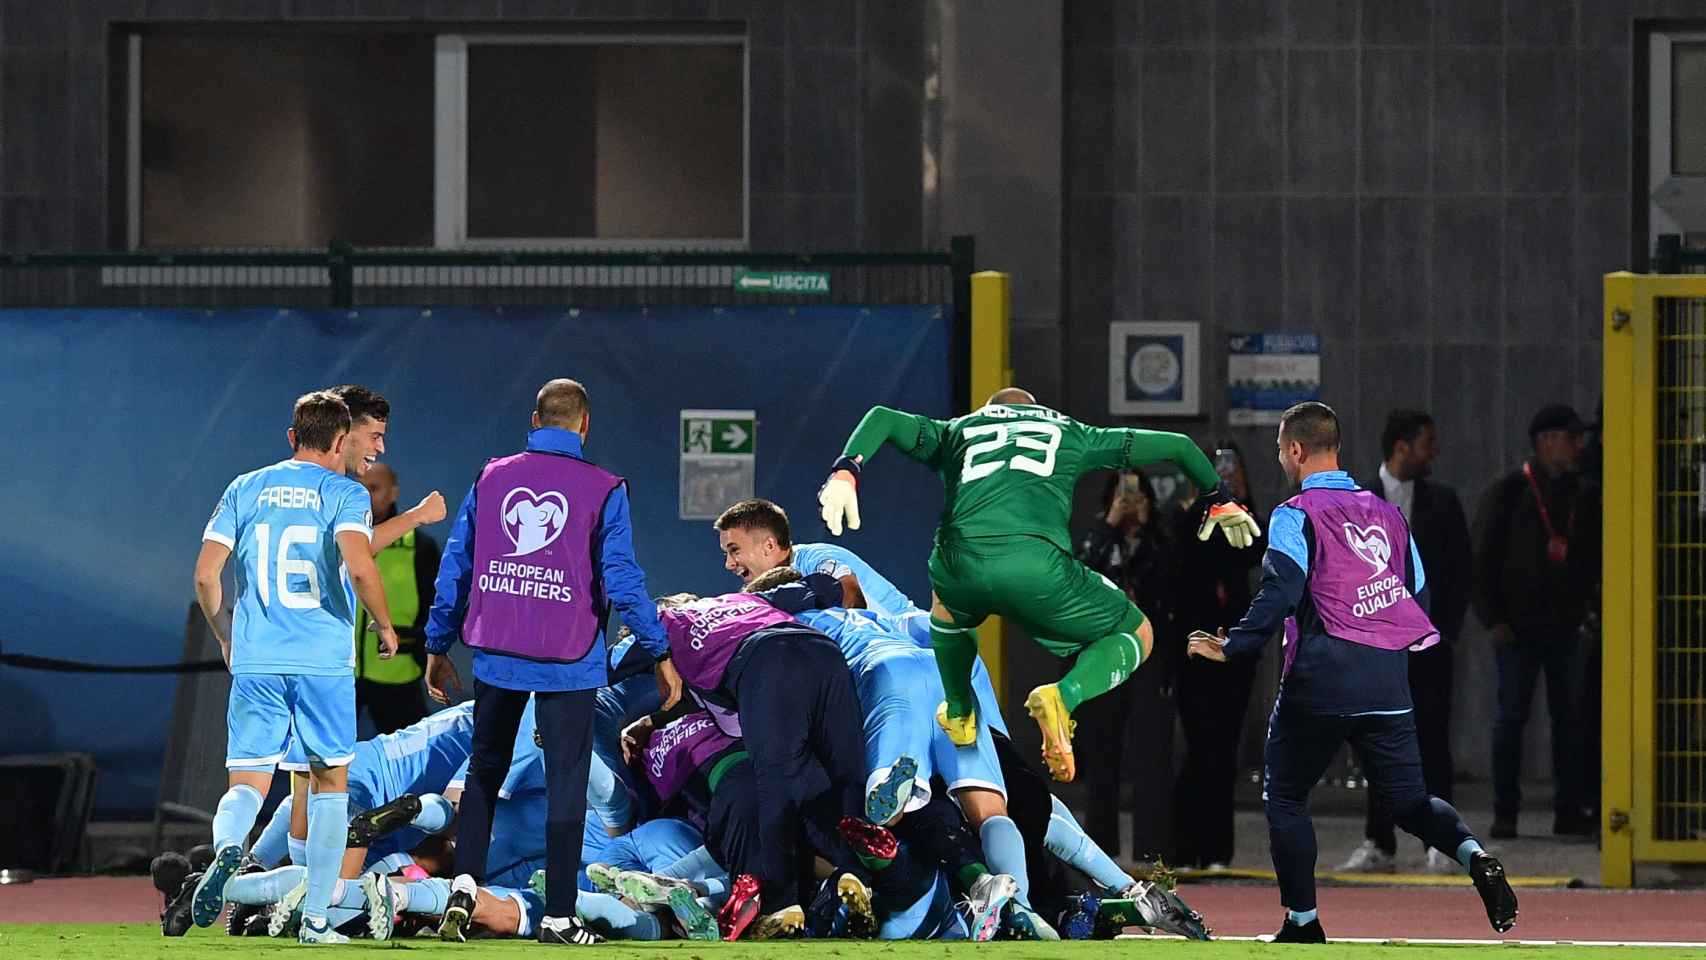 Los jugadores de San Marino, el guardameta incluido, celebran el gol ante Dinamarca.